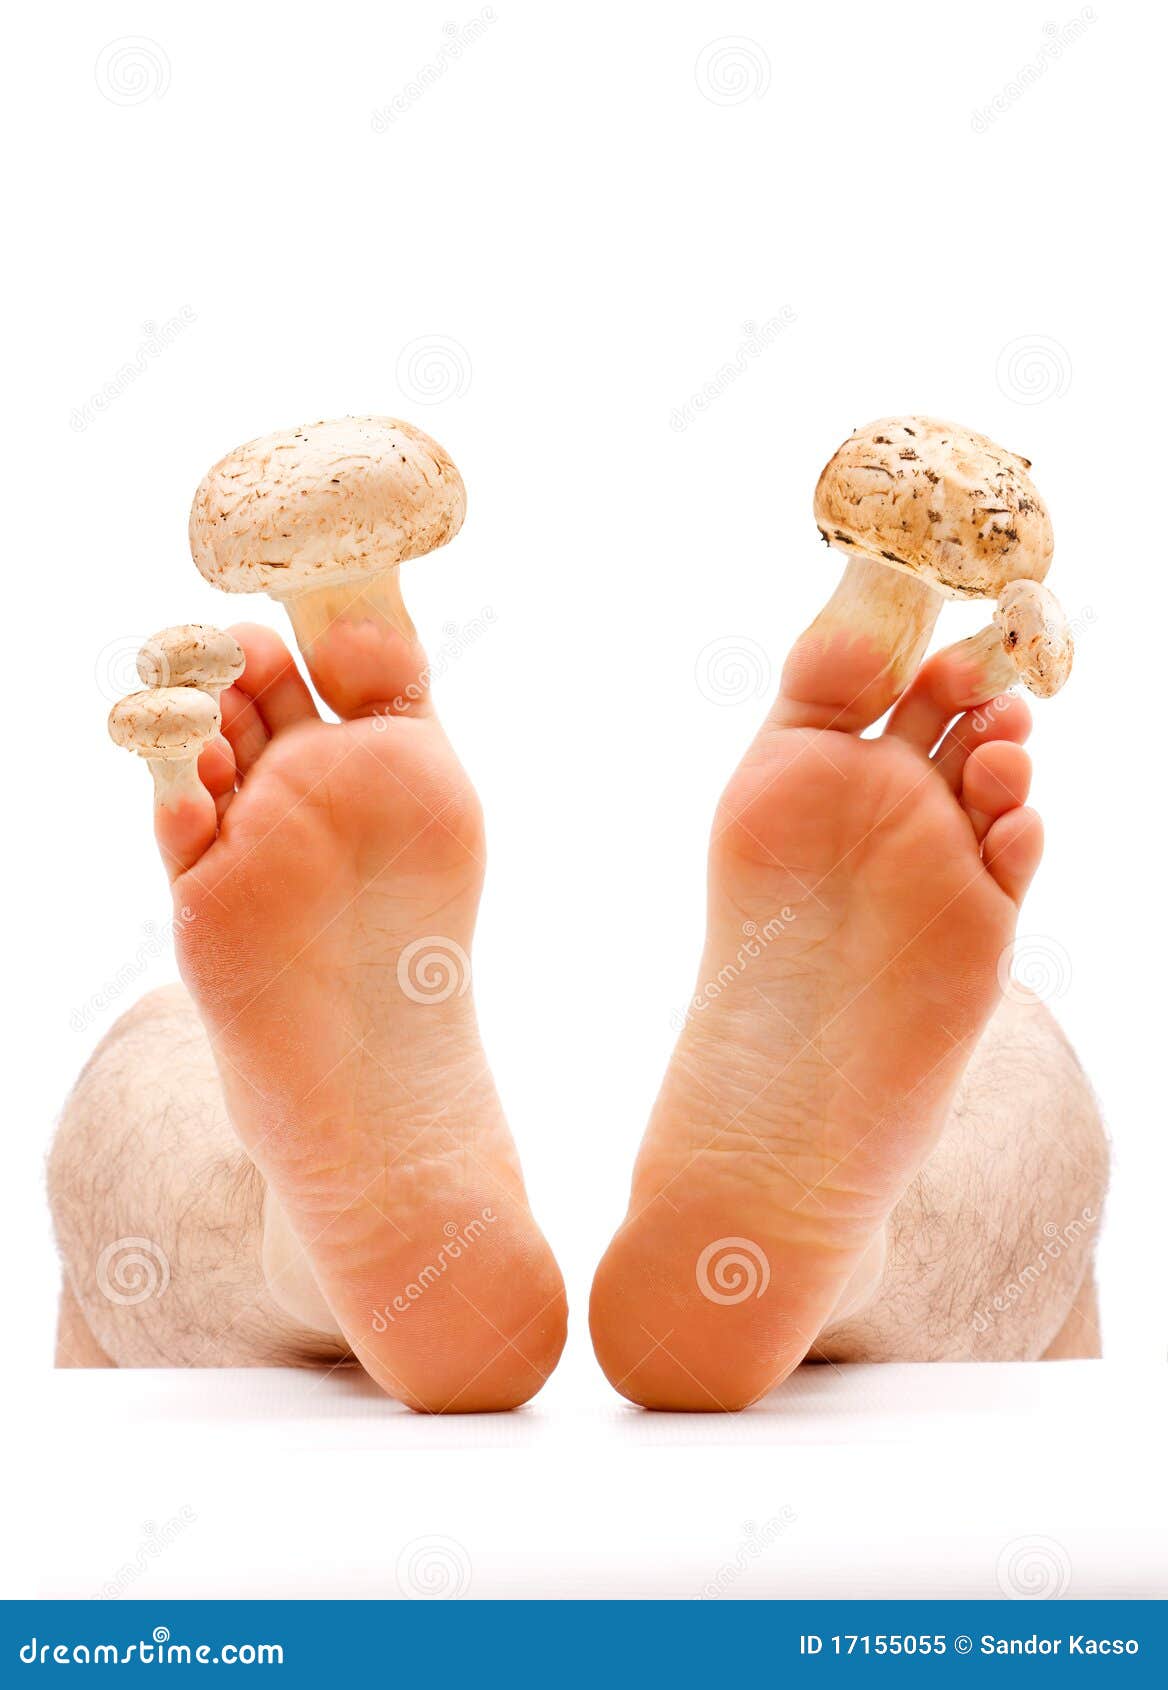 toe nail and skin fungus